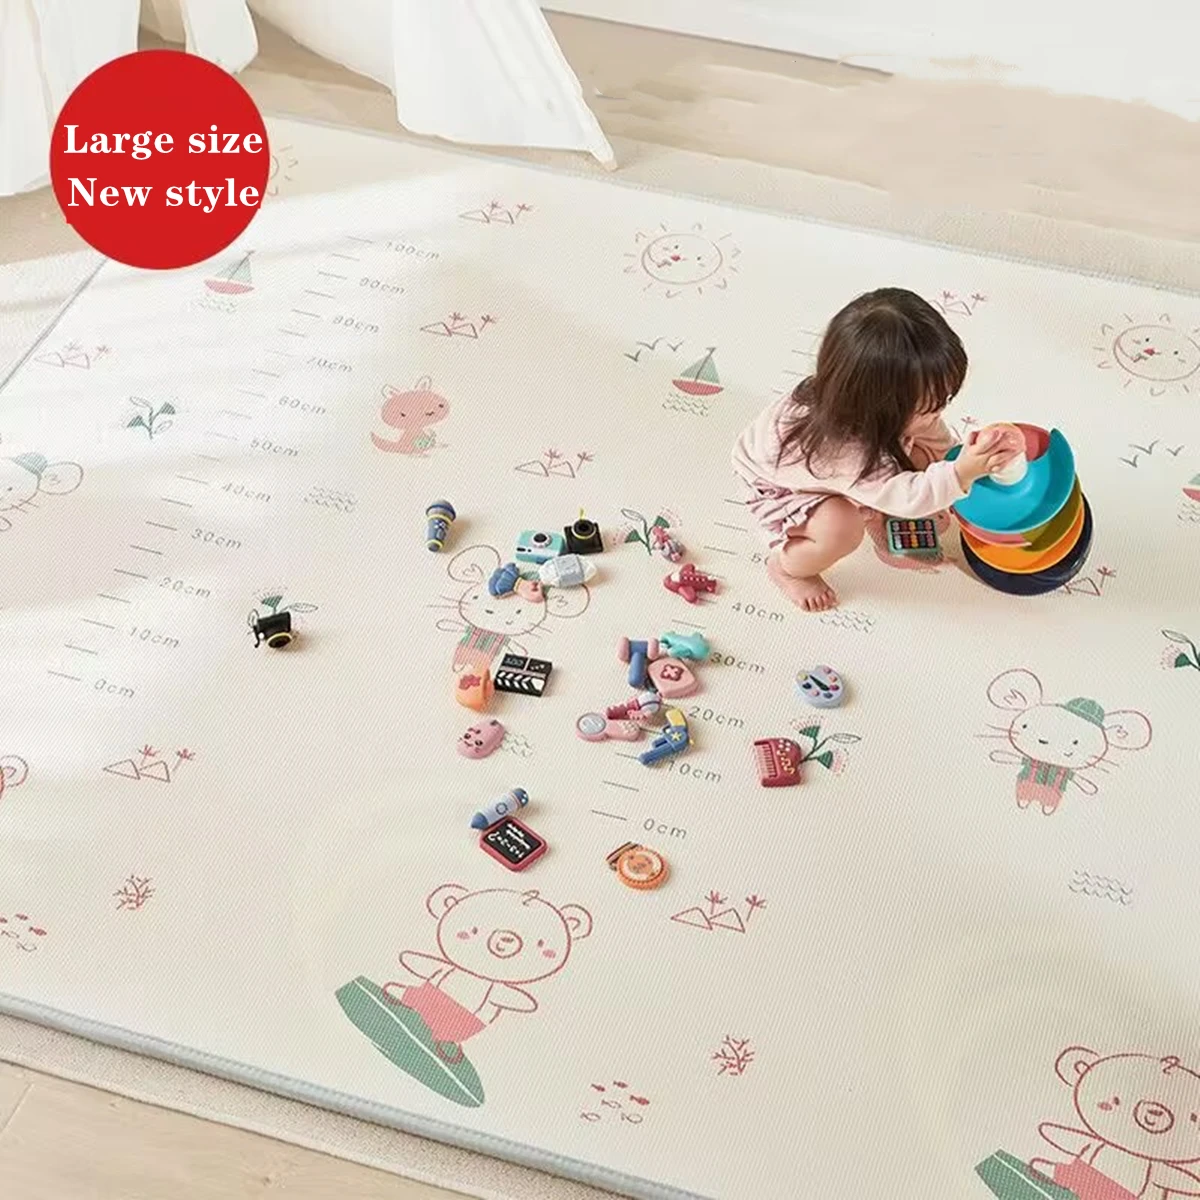 Grubość 1Cm EPE mata do zabawy dla dzieci dywanik do zabawy mata pokój dziecięcy podkładka do pełzania składana mata dywanik dywan dla dziecka mata